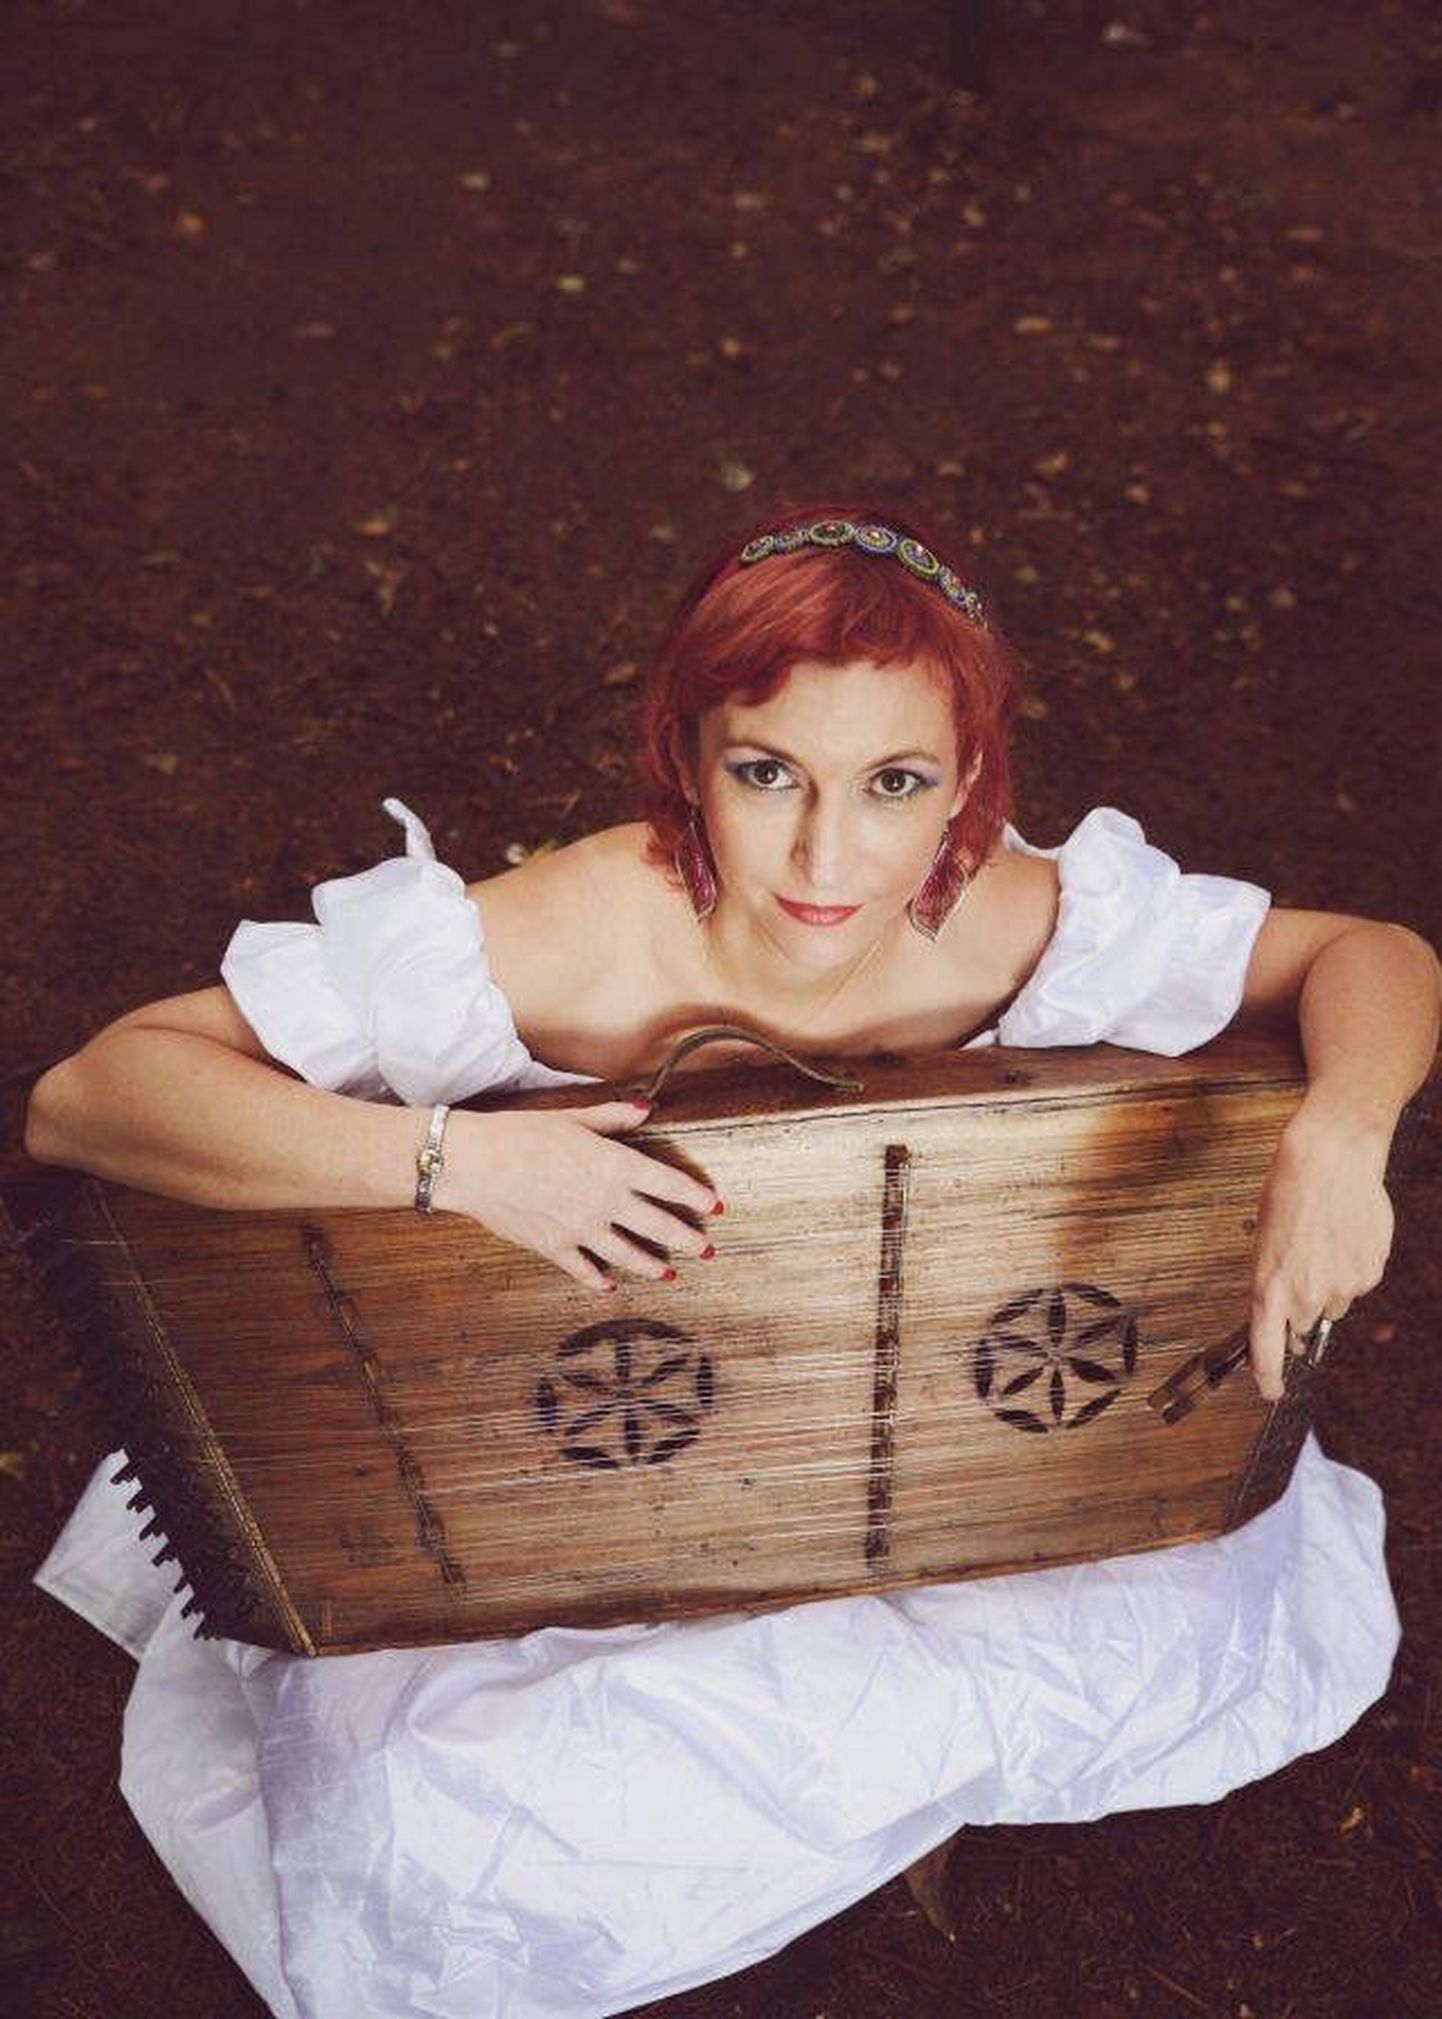 Ania Broda on üks omapärasemaid hääli poola muusikamaastikul. Pühendunud traditsioonilisele- ja folkmuusikale, on tema meeldejäävalt eriline hääl tuntud ennekõike Kapela Brodów ansamblist, mille alustalaks oli ta aastaid. Koos selle kapelliga salvestasid nad viis suurt albumit, millest 2001. aasta "Pieśni i Mélodie na rozmaite Święta" tunnistati Poola parimaks folkalbumiks.